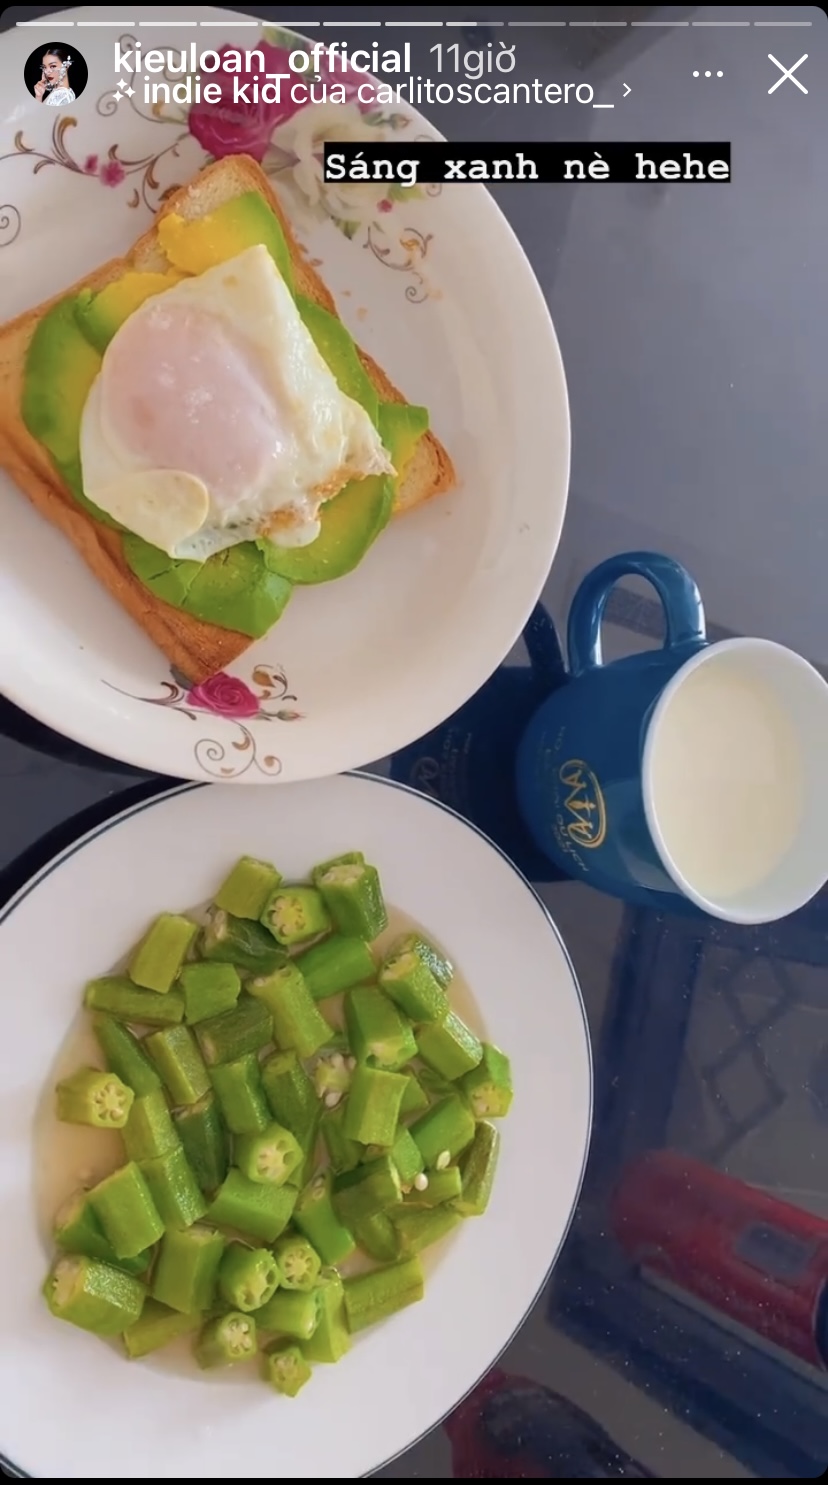 Bữa sáng tuy đơn giản nhưng vô cùng đủ chất và 'giàu sắc xanh' của Á hậu Kiều Loan.